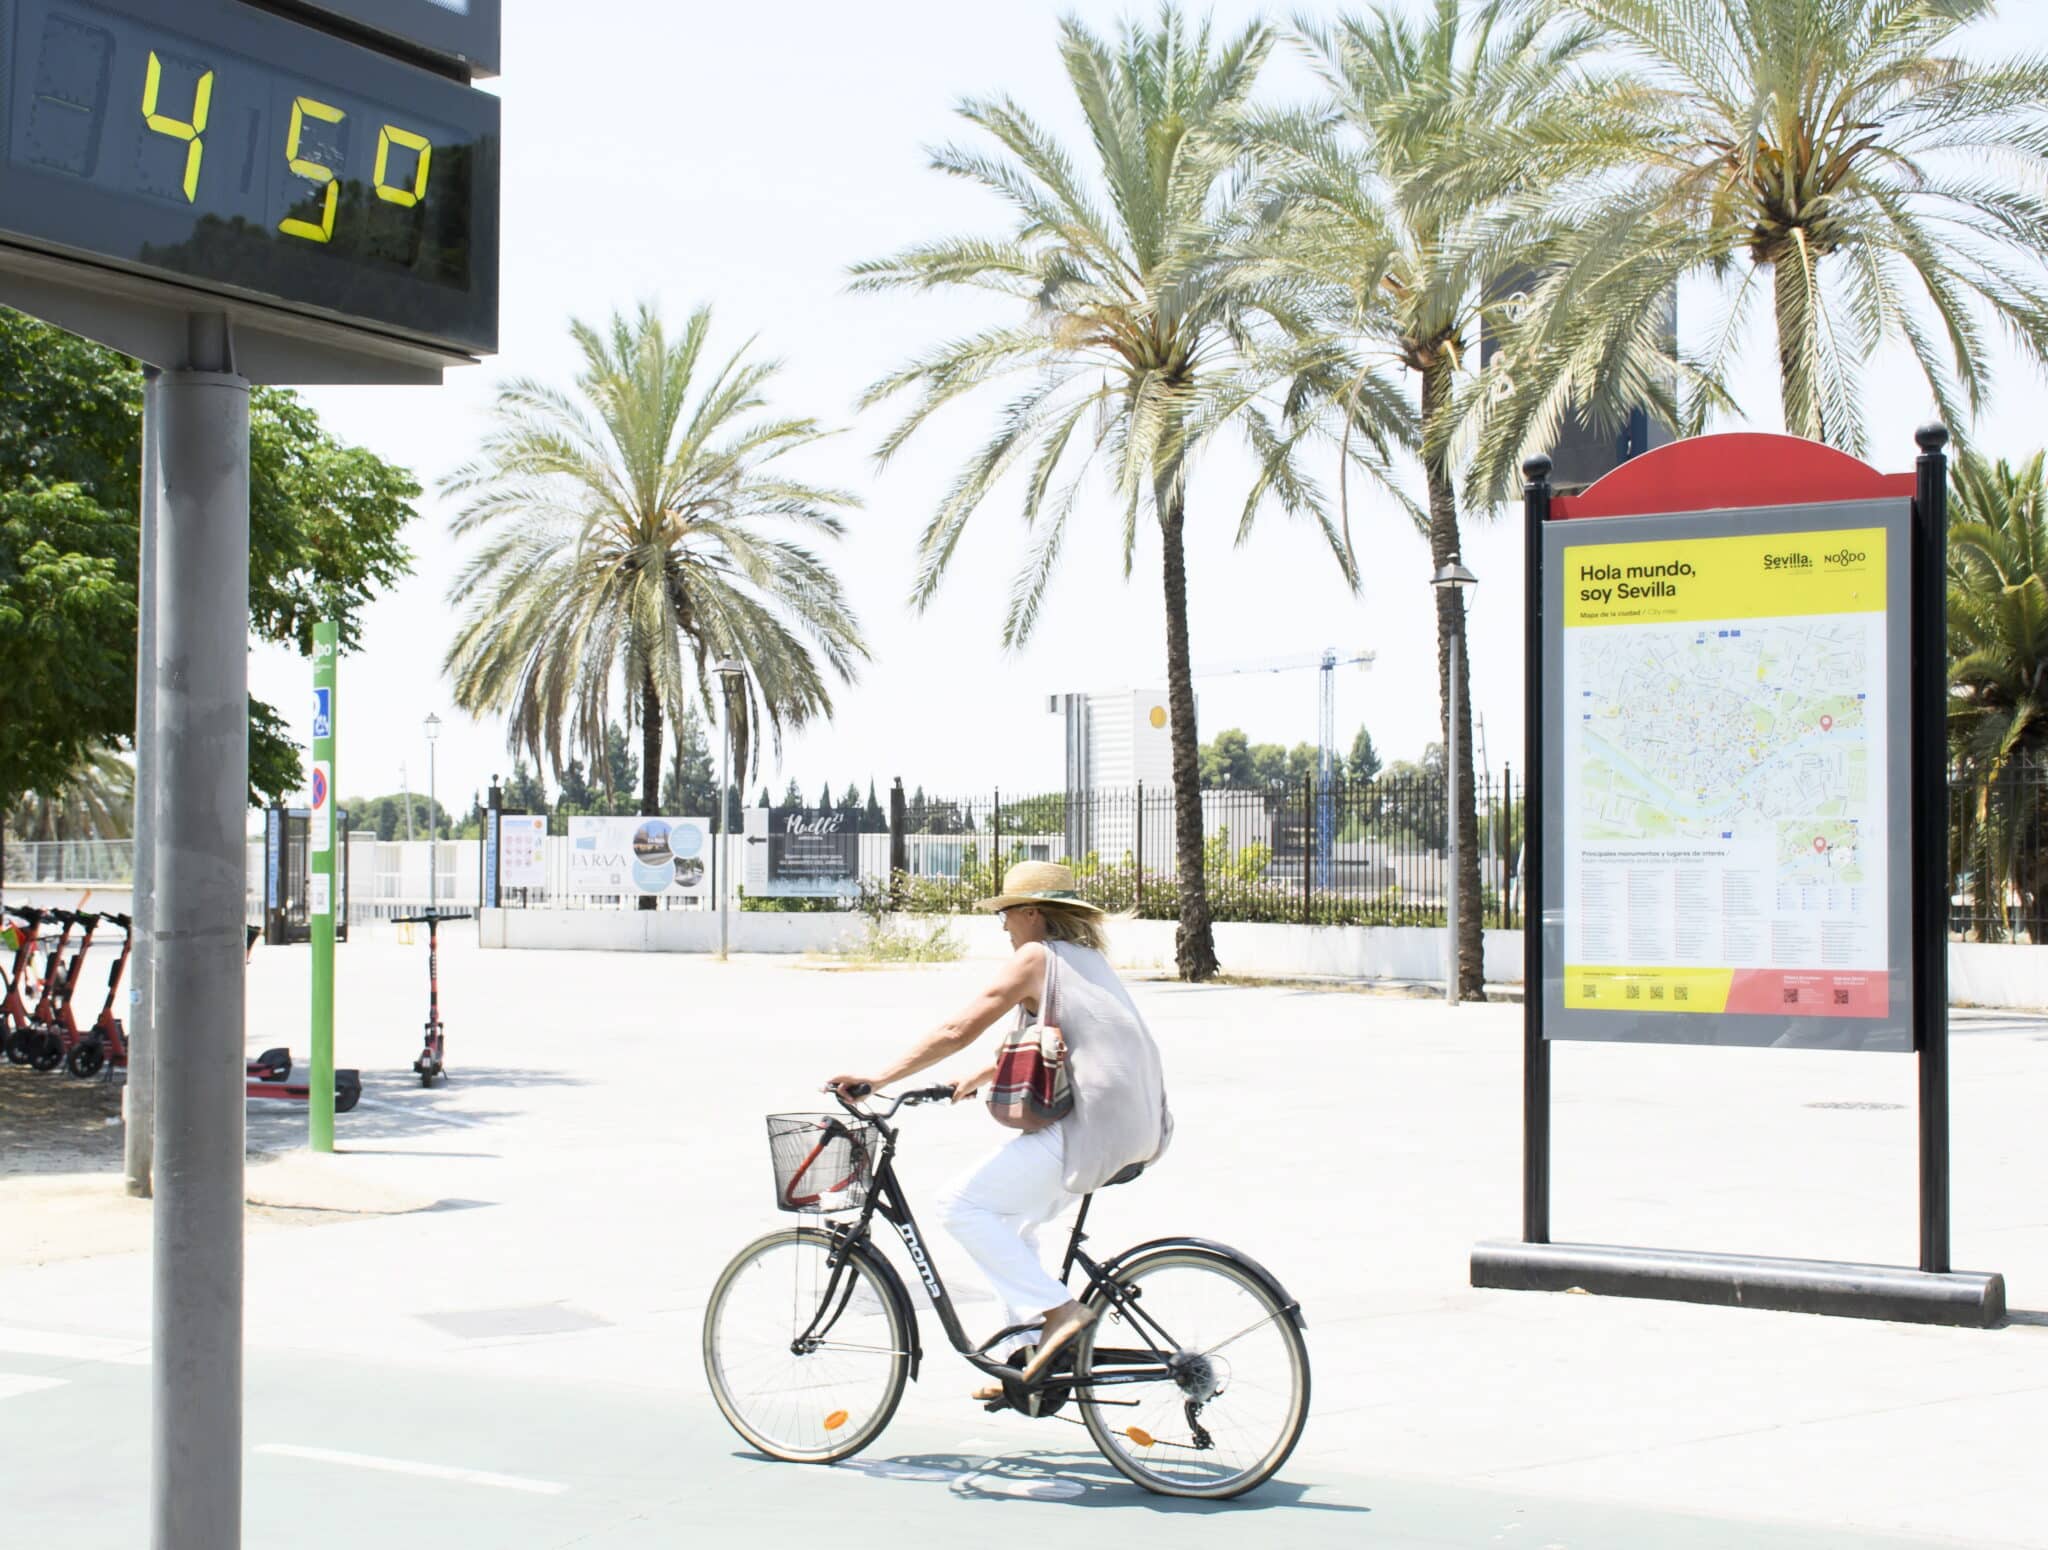 Una mujer en bicicleta pasa junto a un termómetro de calle en Sevilla que marca 45 grados